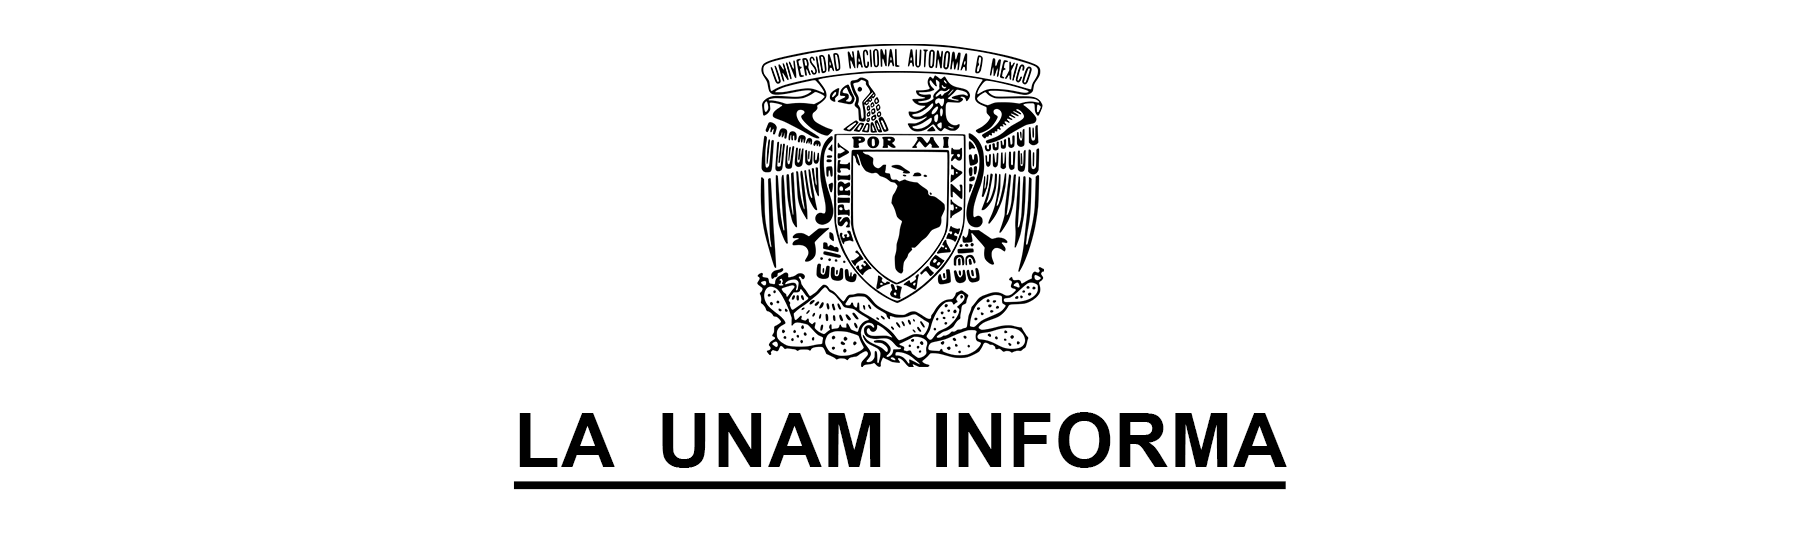 UNAM INFORMA